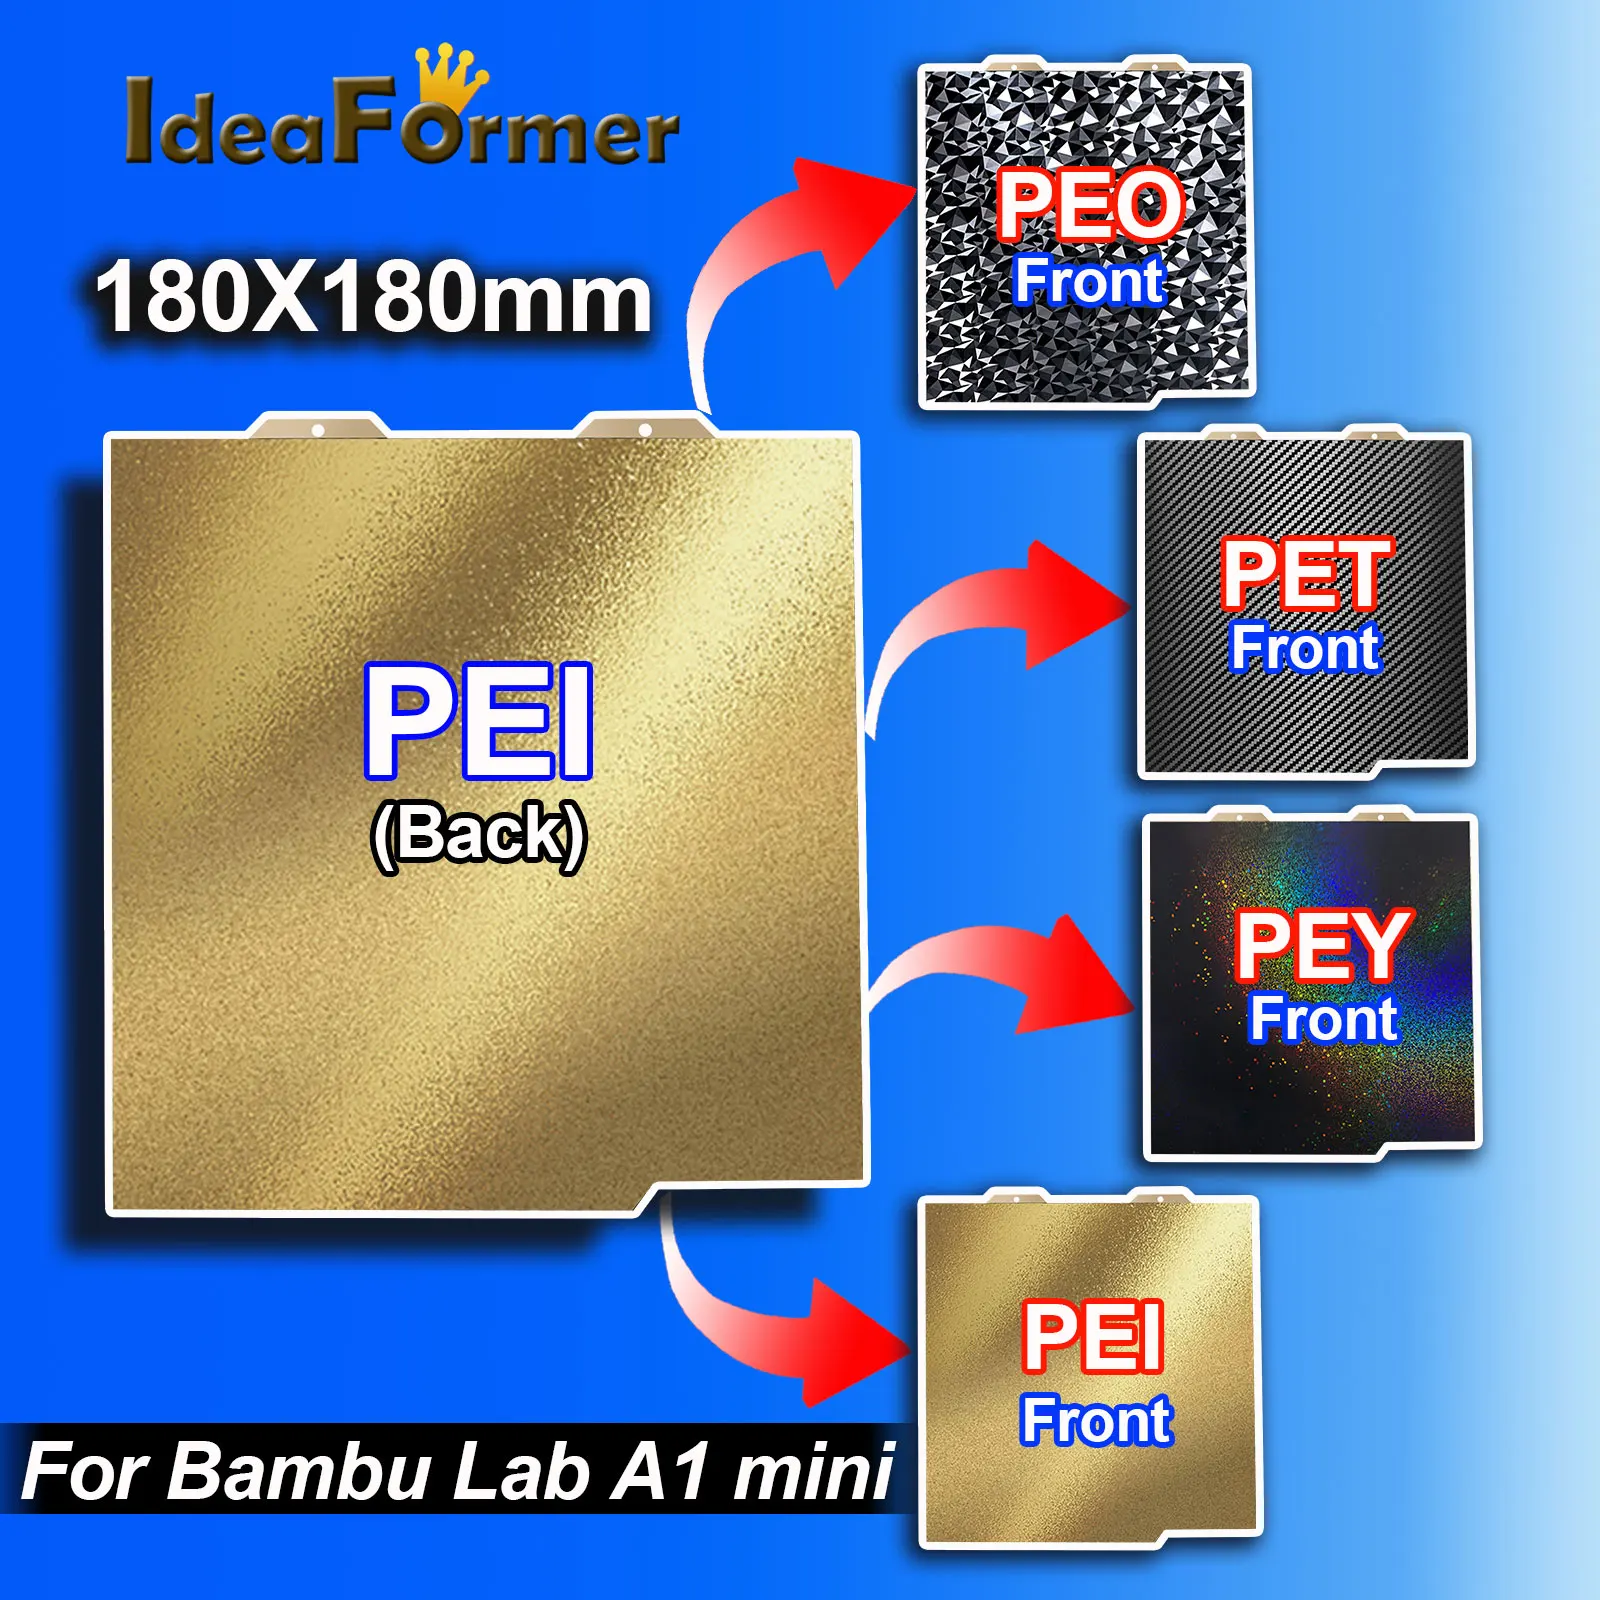 

PEO ПЭТ плита для Bambu Lab A1 mini, двухсторонняя карбоновая конструкция PEI PEY Starry pei 180x180 мм для стального листа Bambulab A1 Mini